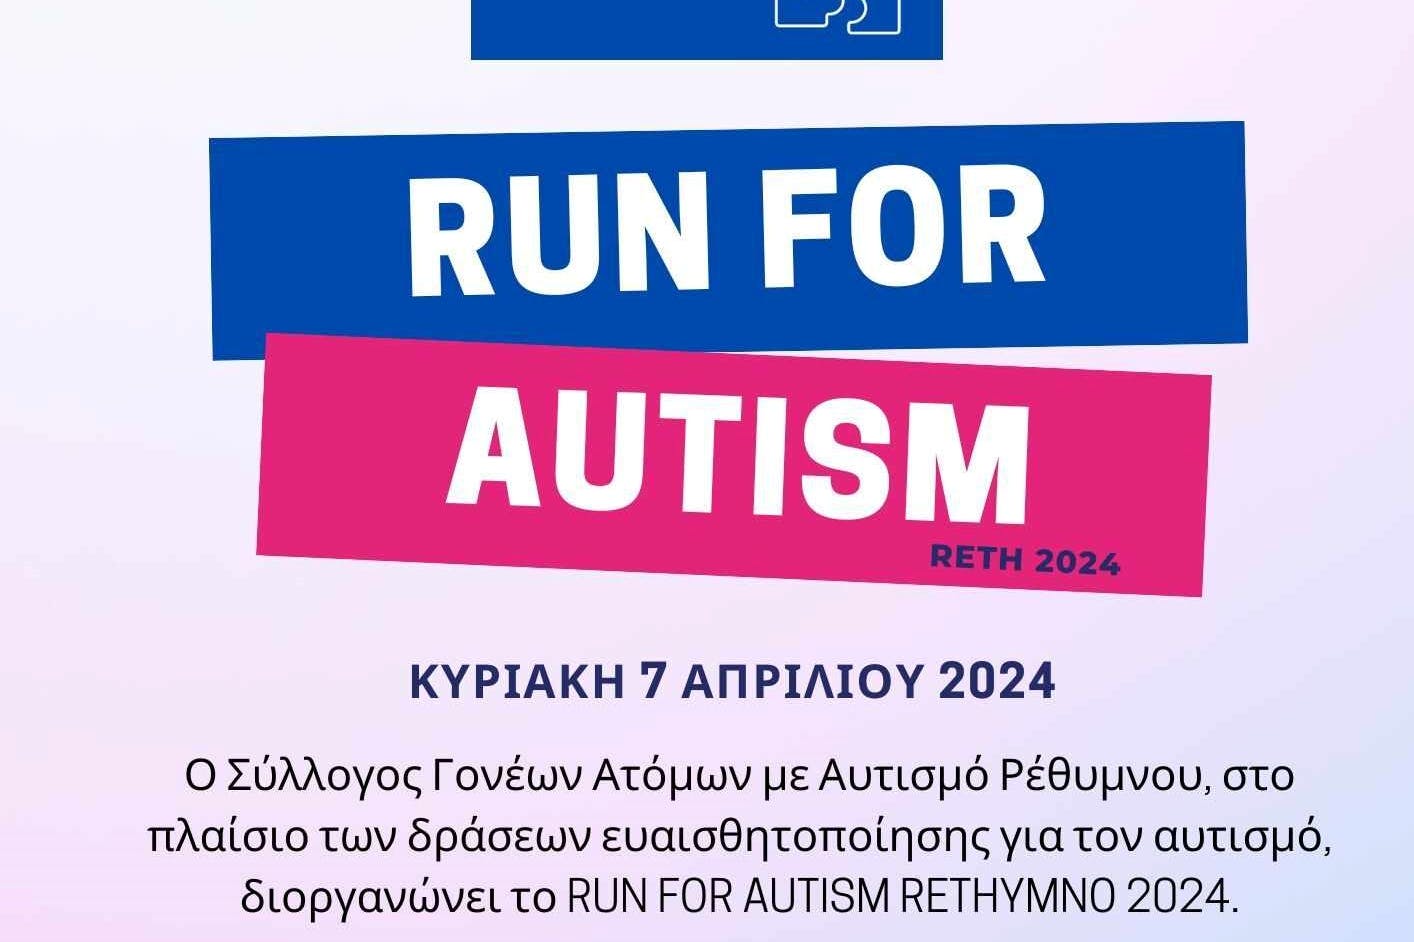 Τρέχω για τον αυτισμό στο Ρέθυμνο 2024 – Η προκήρυξη